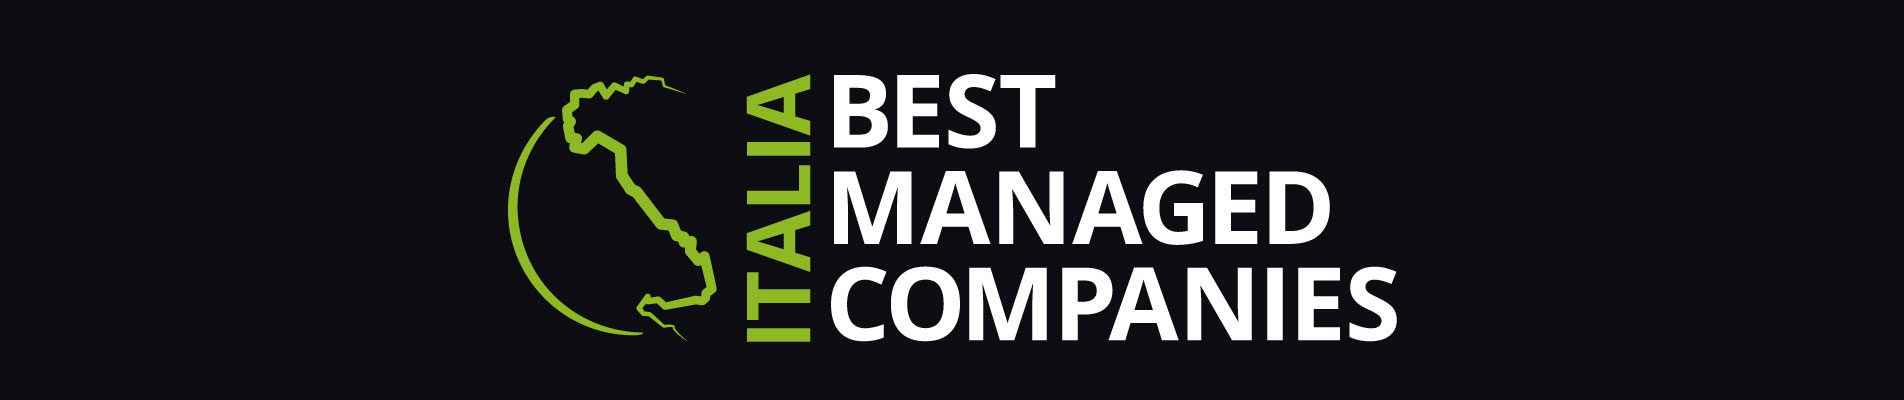 Tecno conquista la categoria Gold: vincitori per la quarta volta del Best Managed Companies Award